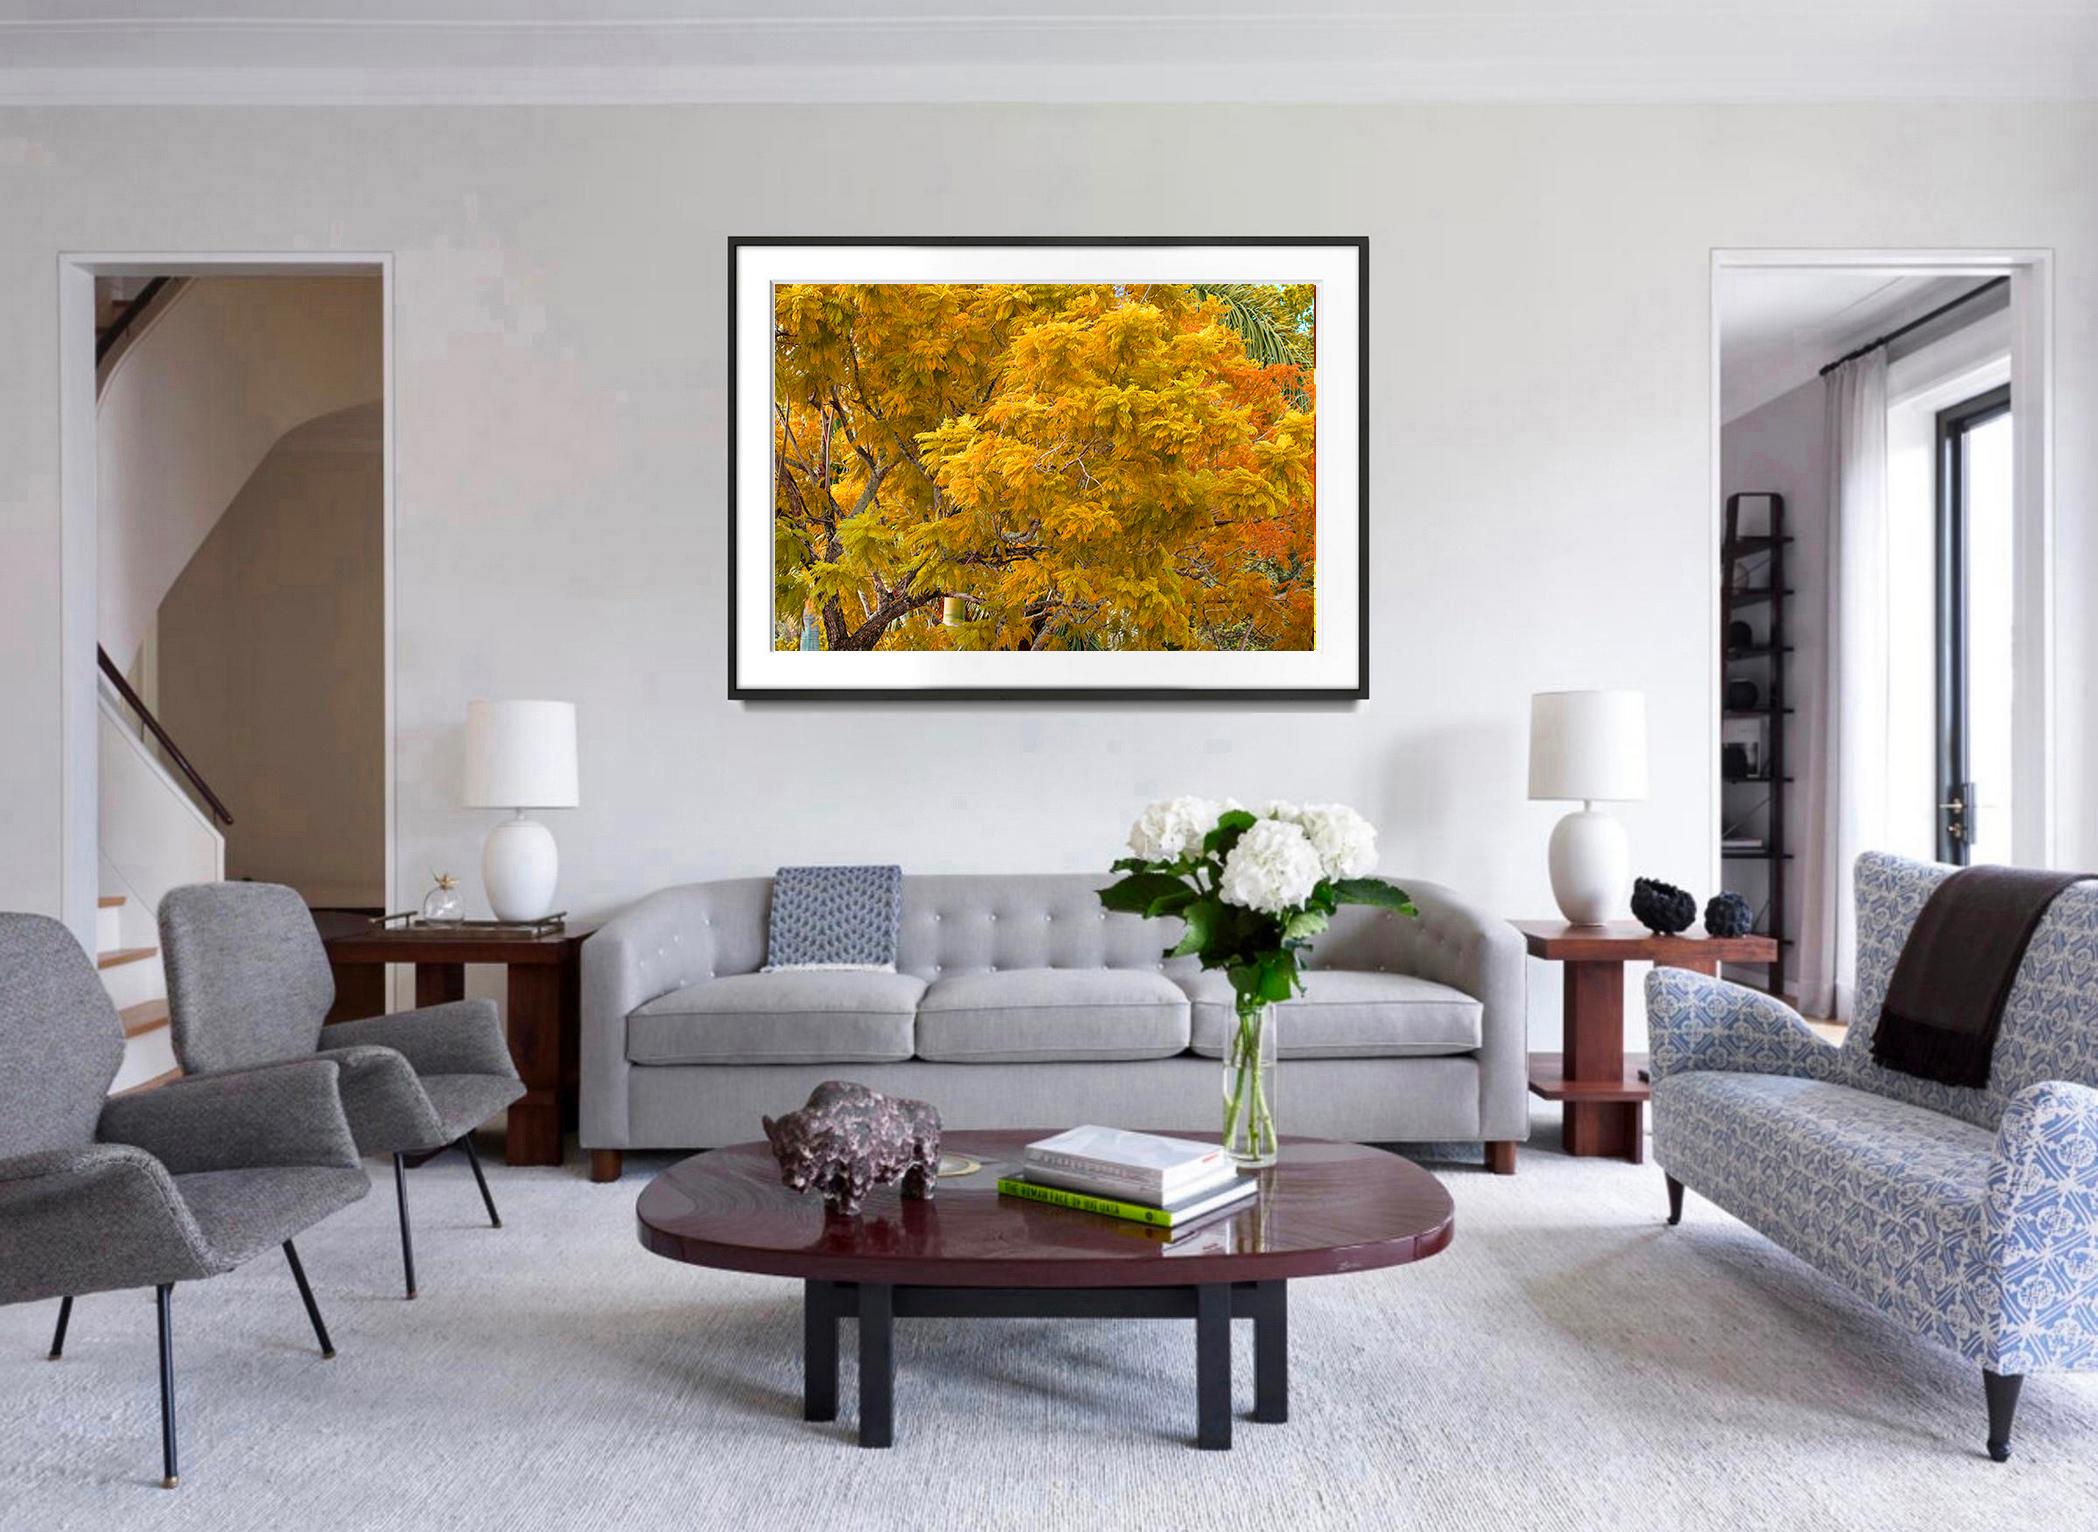 Herbstfarbe. Herbstlaub, Bäume in  Schattierungen von Muted  Gelb und  Orange (Post-Impressionismus), Photograph, von Robert Funk